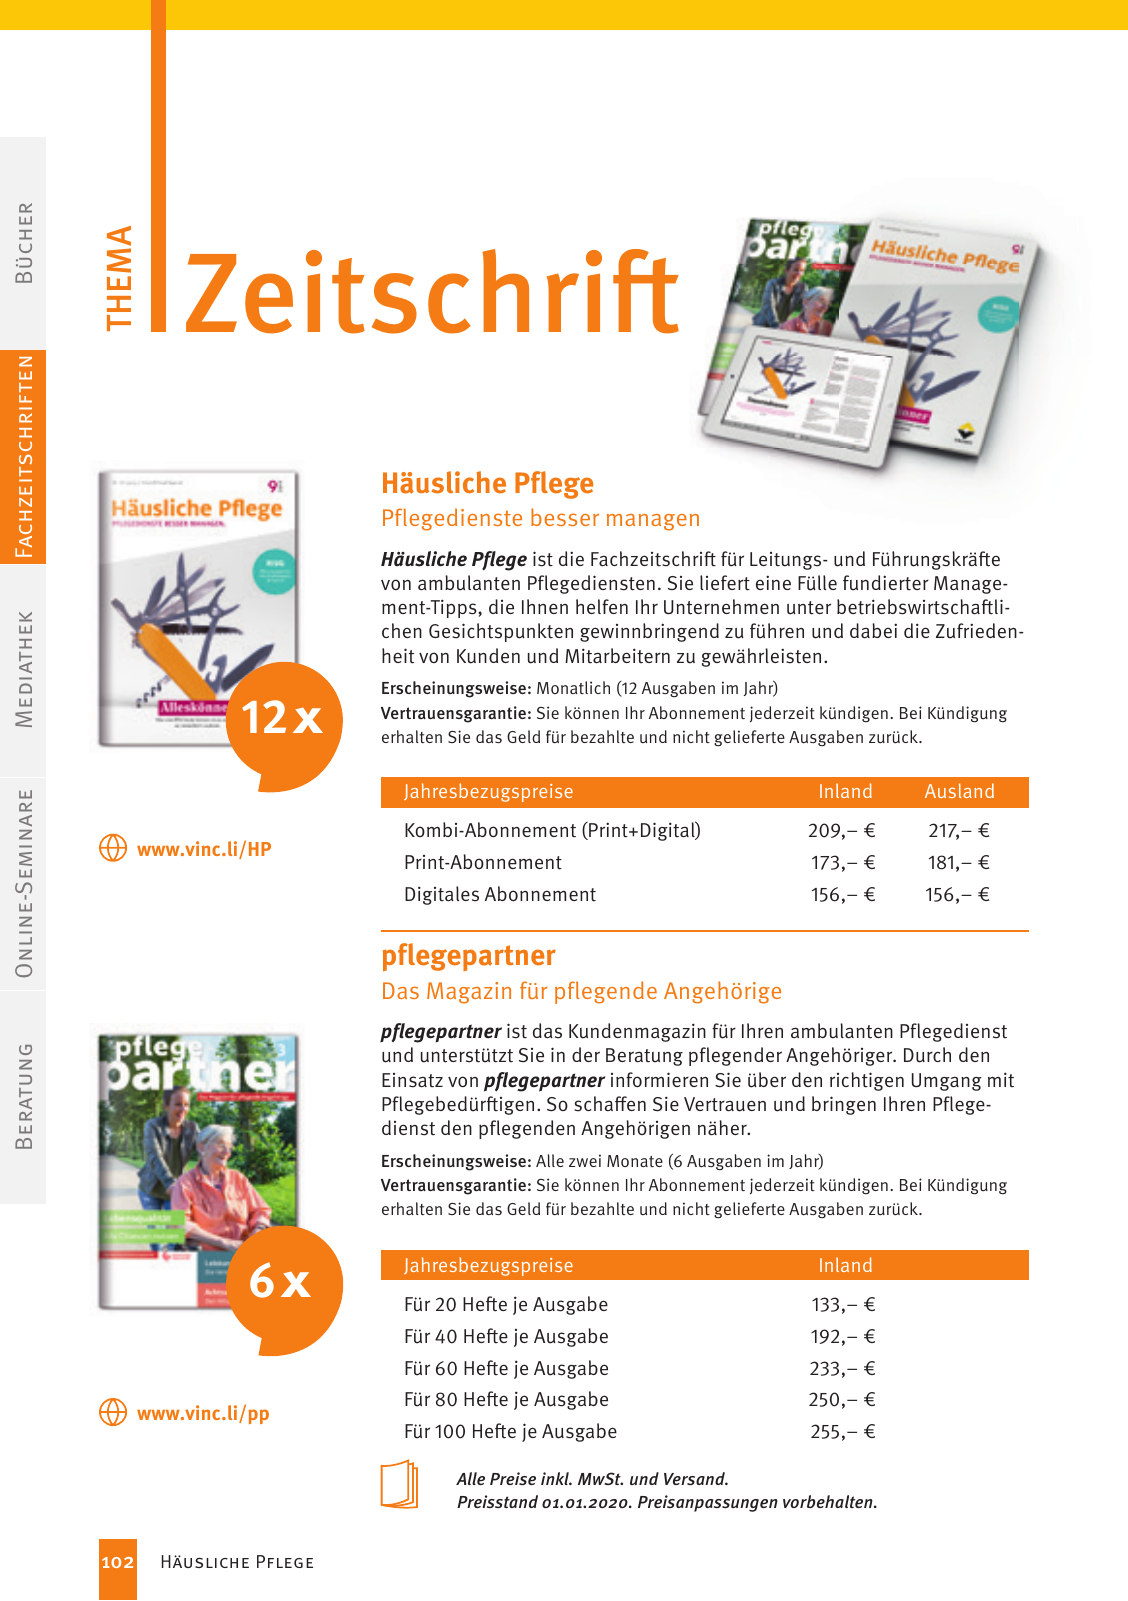 Vorschau Vincentz Verlagsprogramm 2020 Seite 102